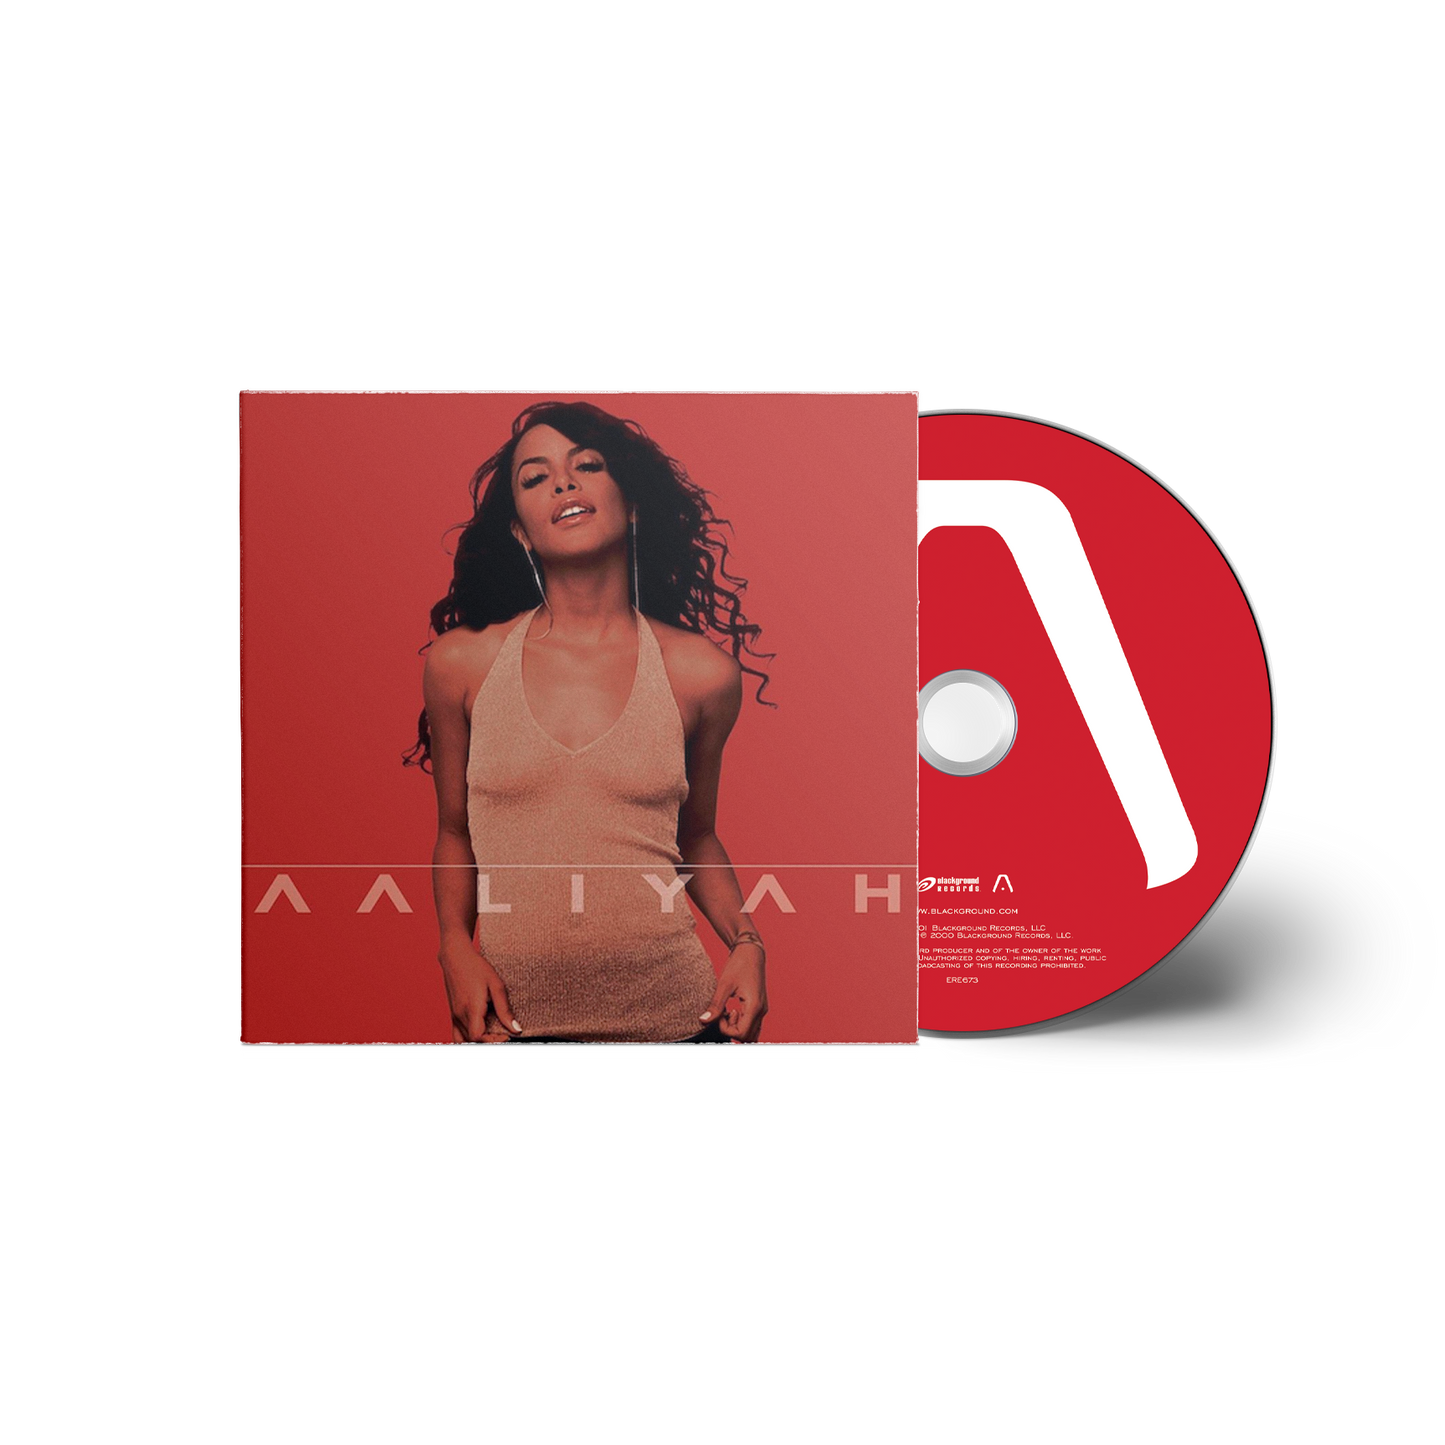 Aaliyah - Aaliyah CD Box Set